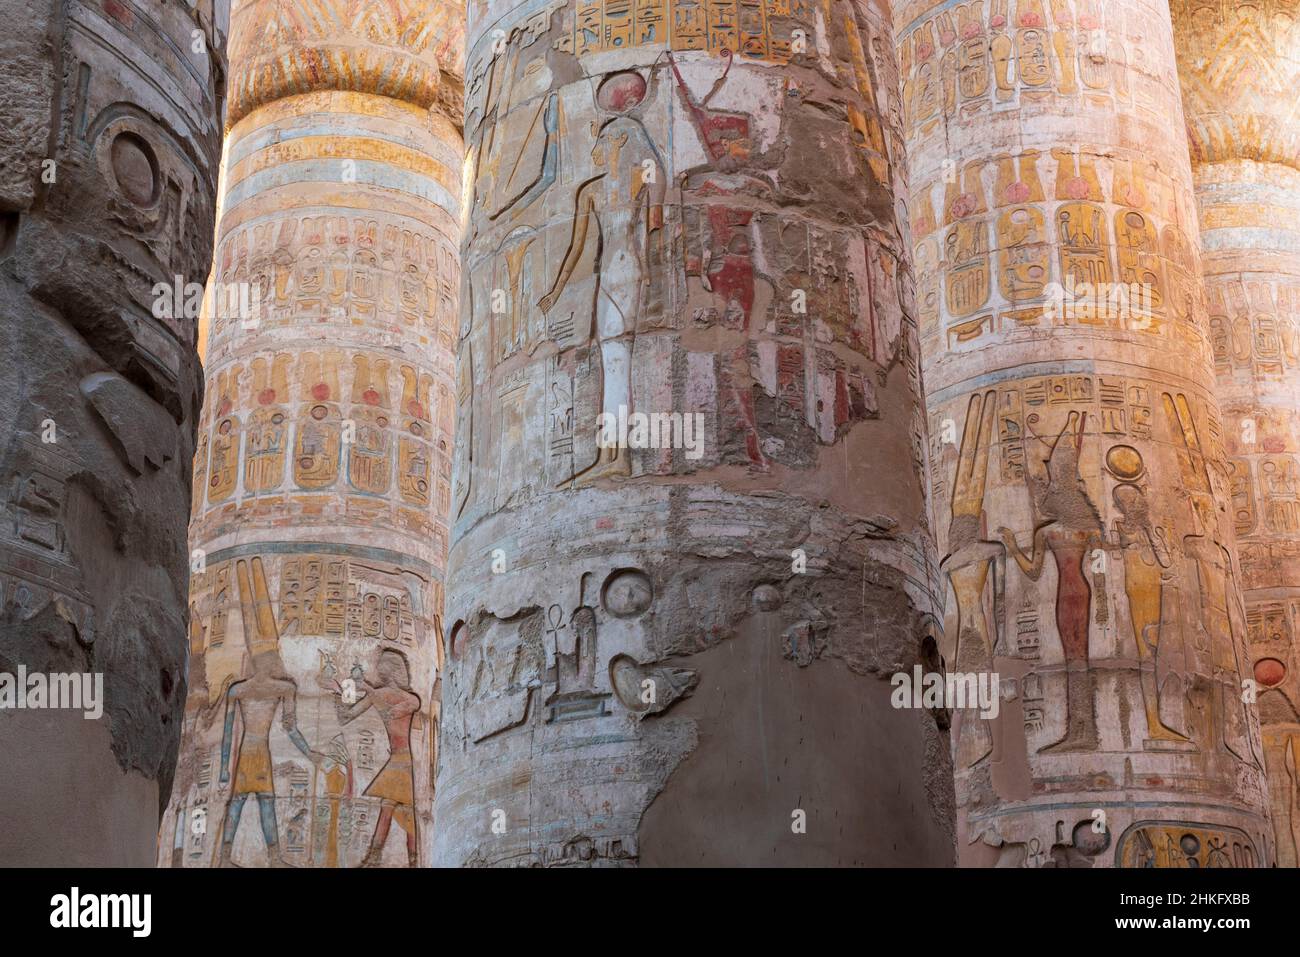 Égypte, haute Égypte, Vallée du Nil, Louxor, Temple de Karnak classé au patrimoine mondial de l'UNESCO, Grand Temple d'Amon, grande salle hypostyle avec 134 piliers de pierre Banque D'Images